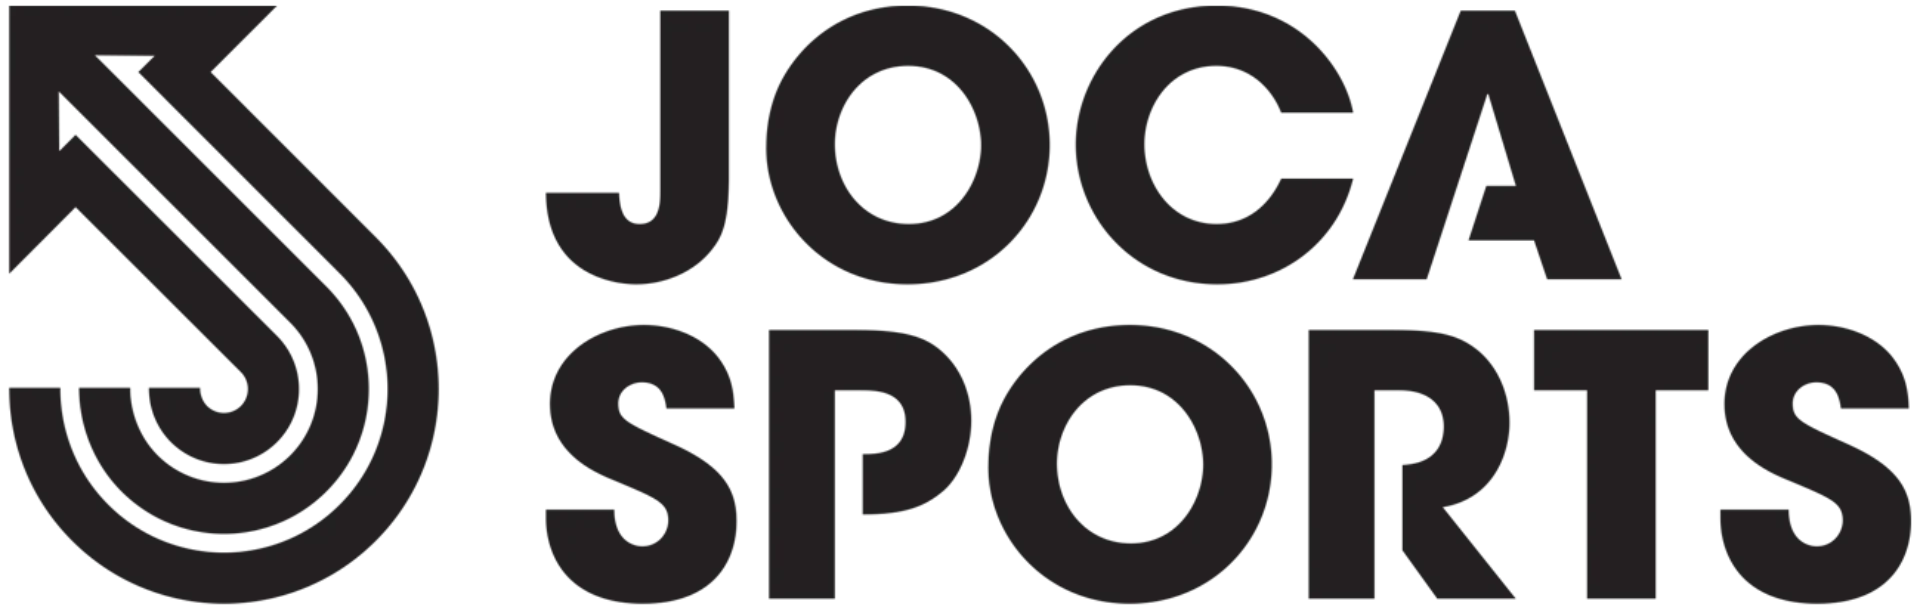 www.jocasports.com